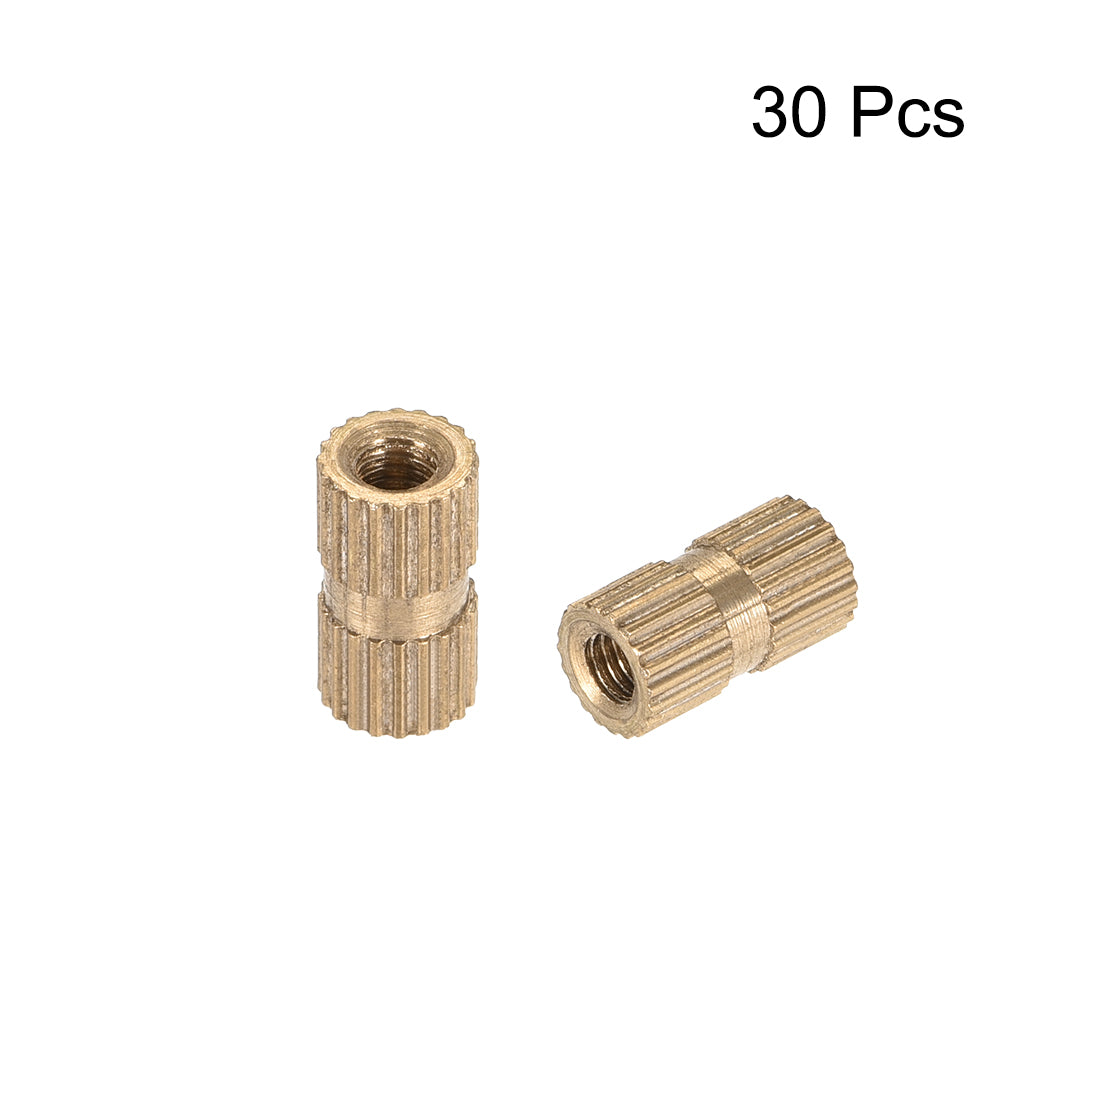 uxcell Uxcell Knurled Insert Nuts, M3 x 10mm(L) x 5mm(OD) Female Thread Brass Embedment Assortment Kit, 30 Pcs